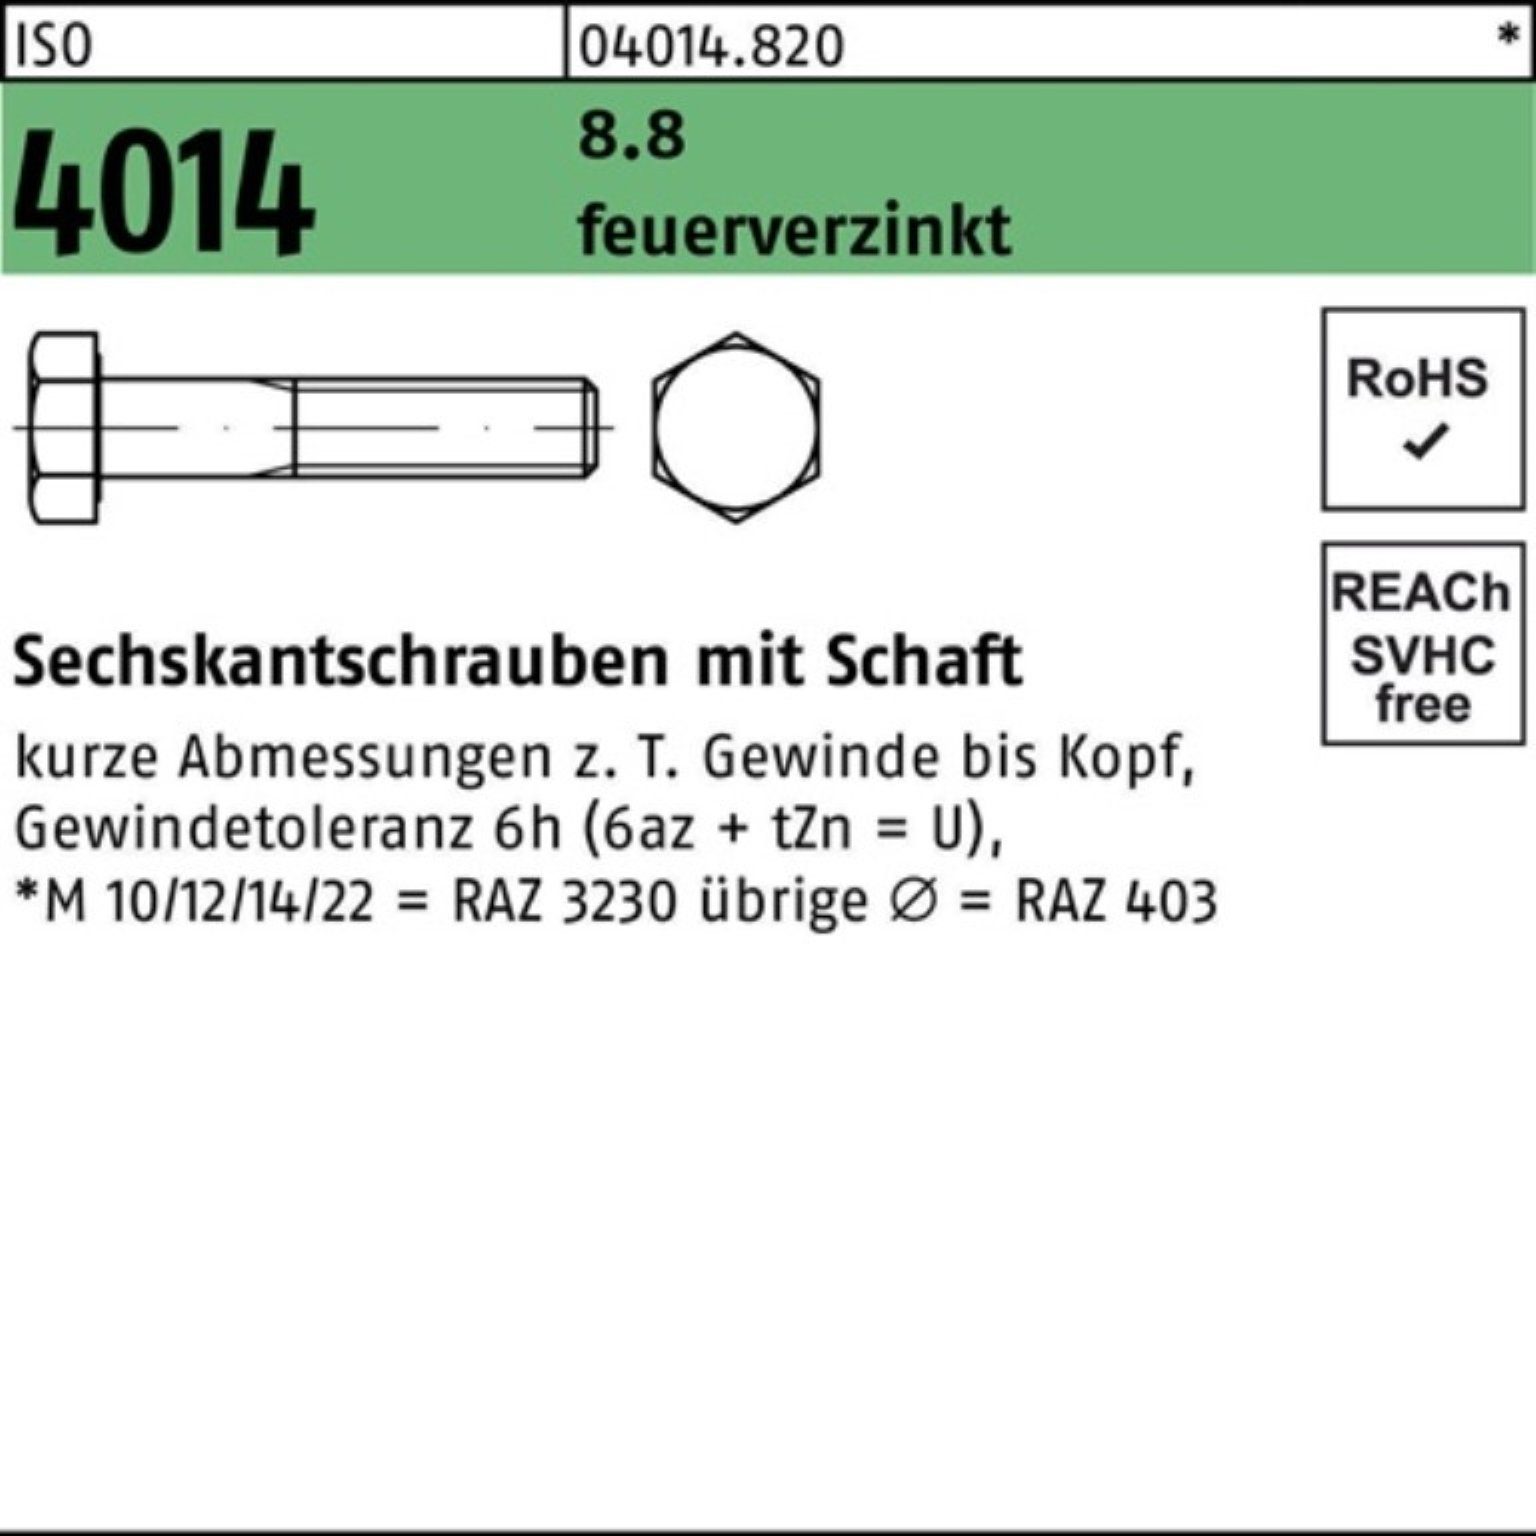 Bufab Sechskantschraube 100er Pack Sechskantschraube ISO 4014 Schaft M24x 300 8.8 feuerverz. 1